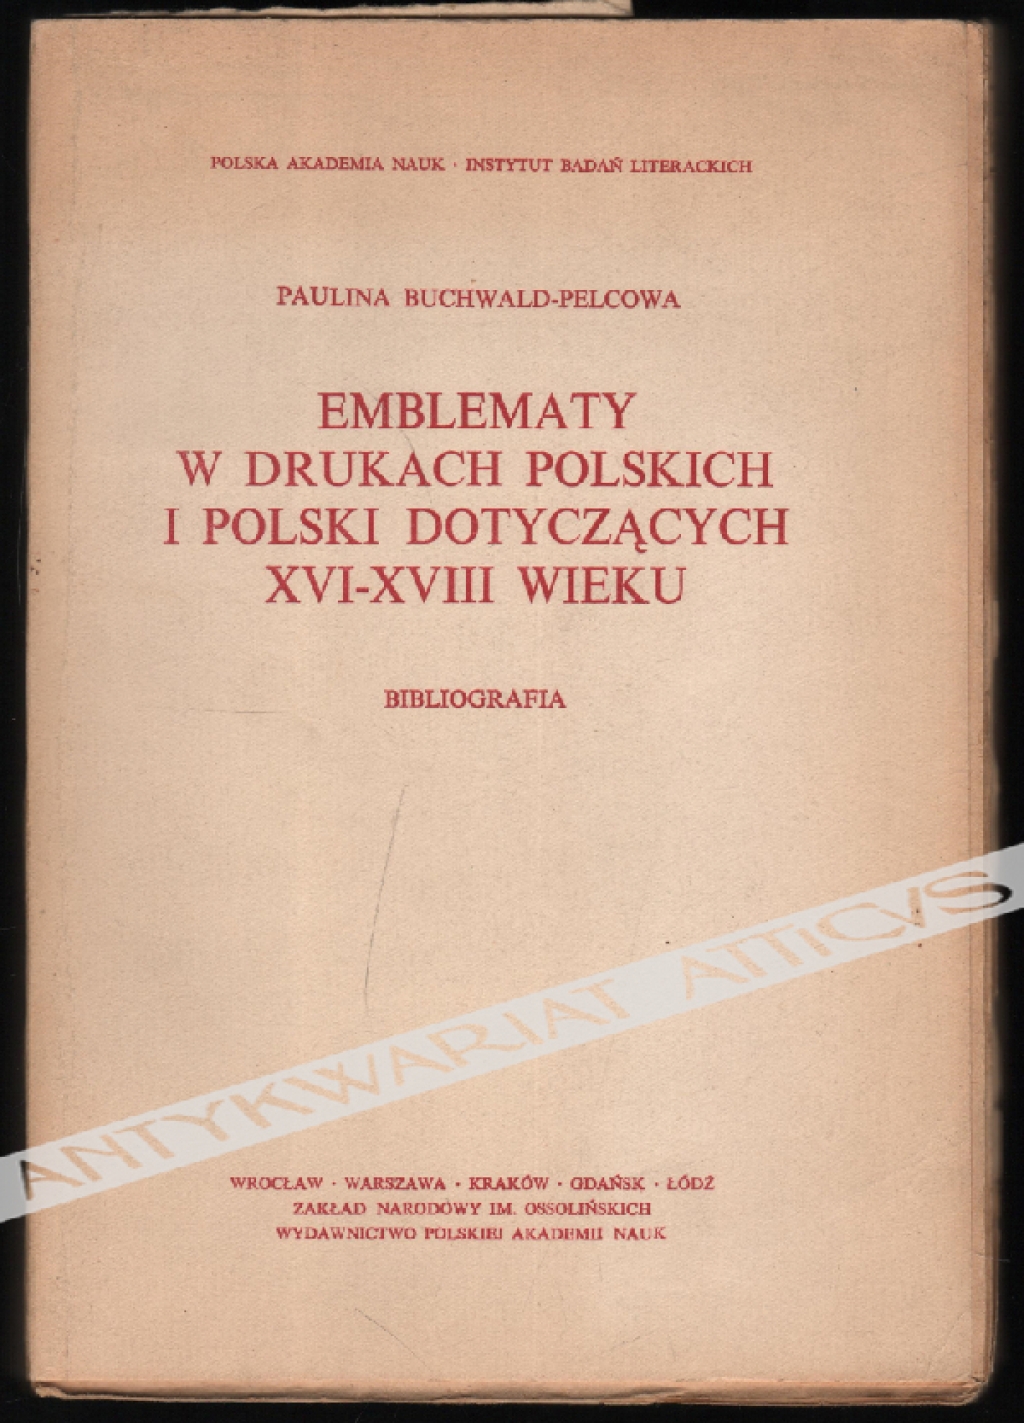 Emblematy w drukach polskich i Polski dotyczących XVI-XVIII wieku. Bibliografia